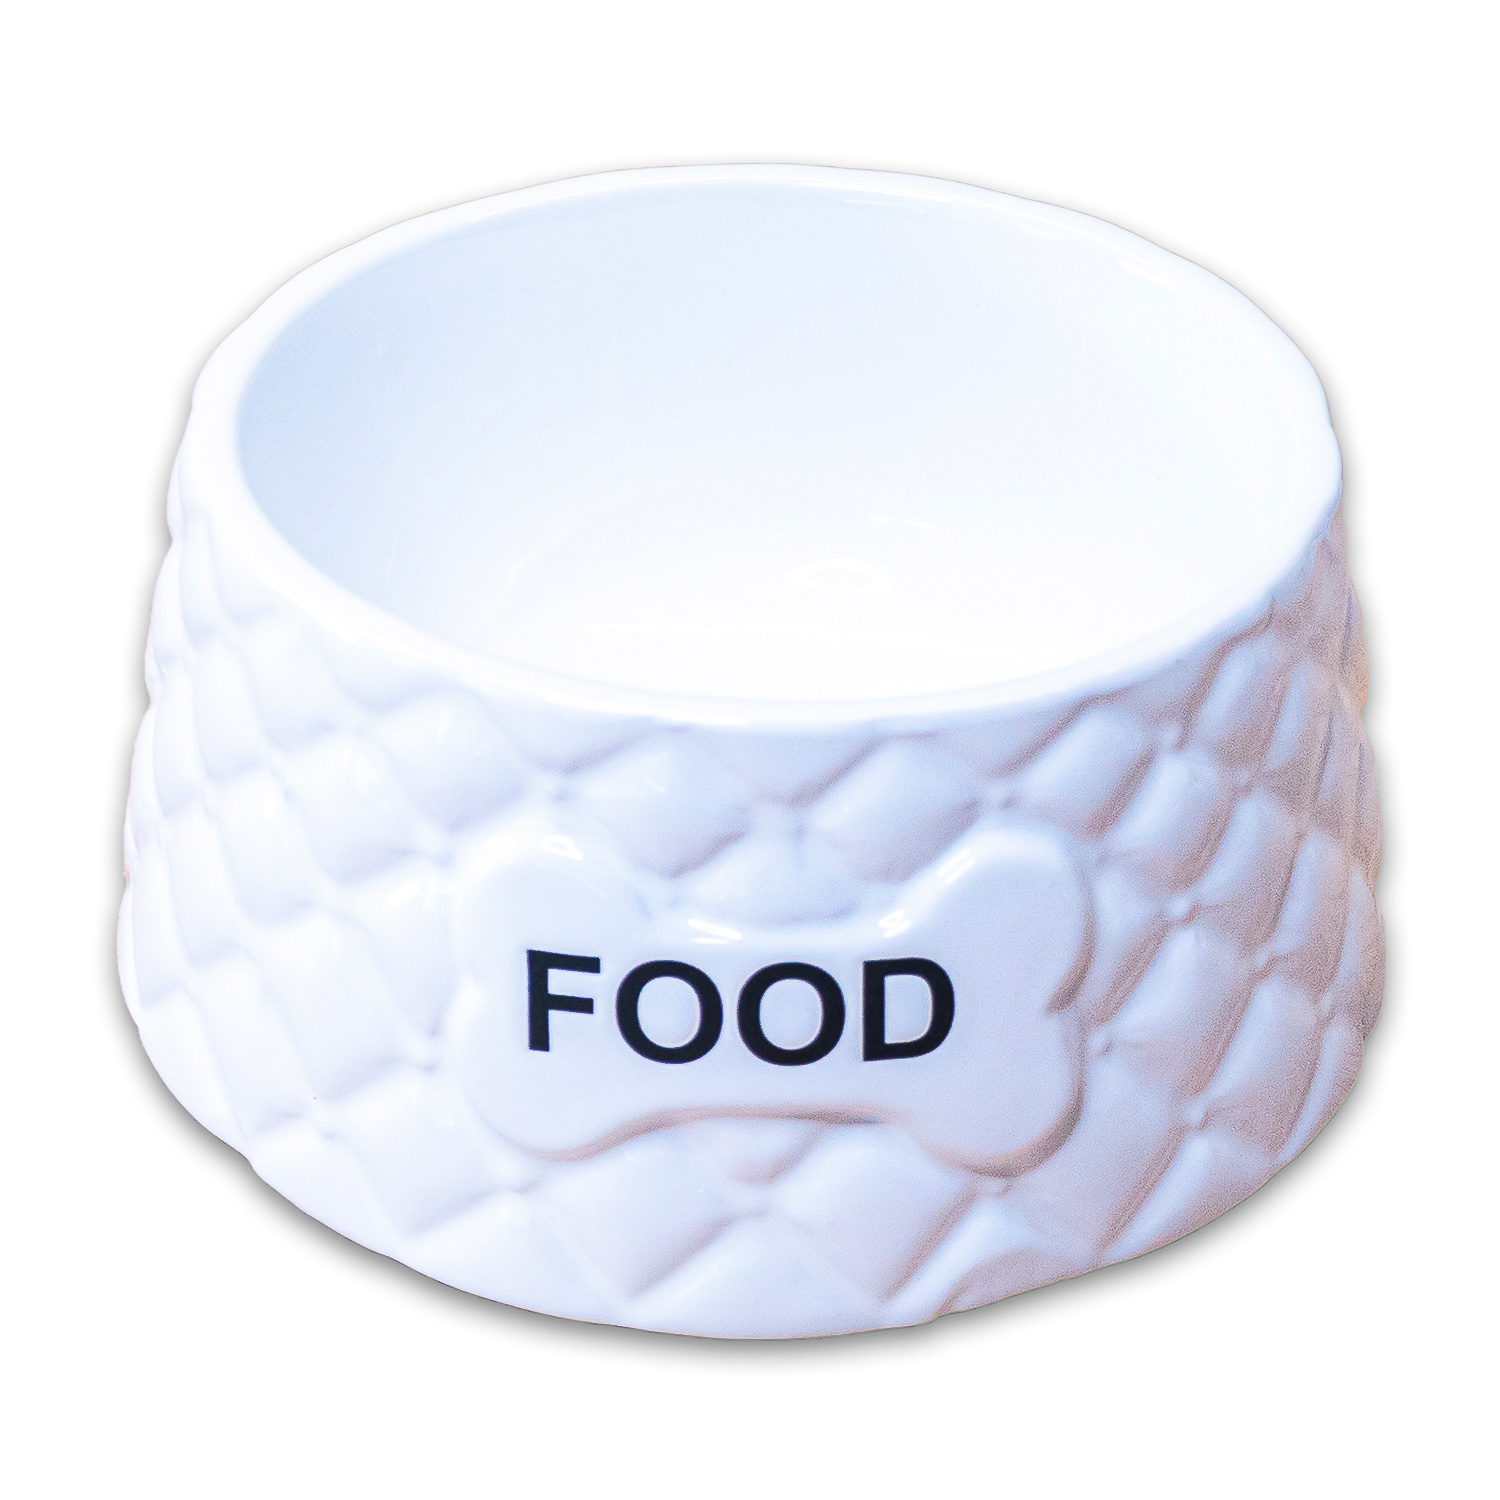 КерамикАрт КерамикАрт миска Food  керамическая, белая (680 мл) керамикарт керамикарт домик мухомор для грызунов 8 5х8см